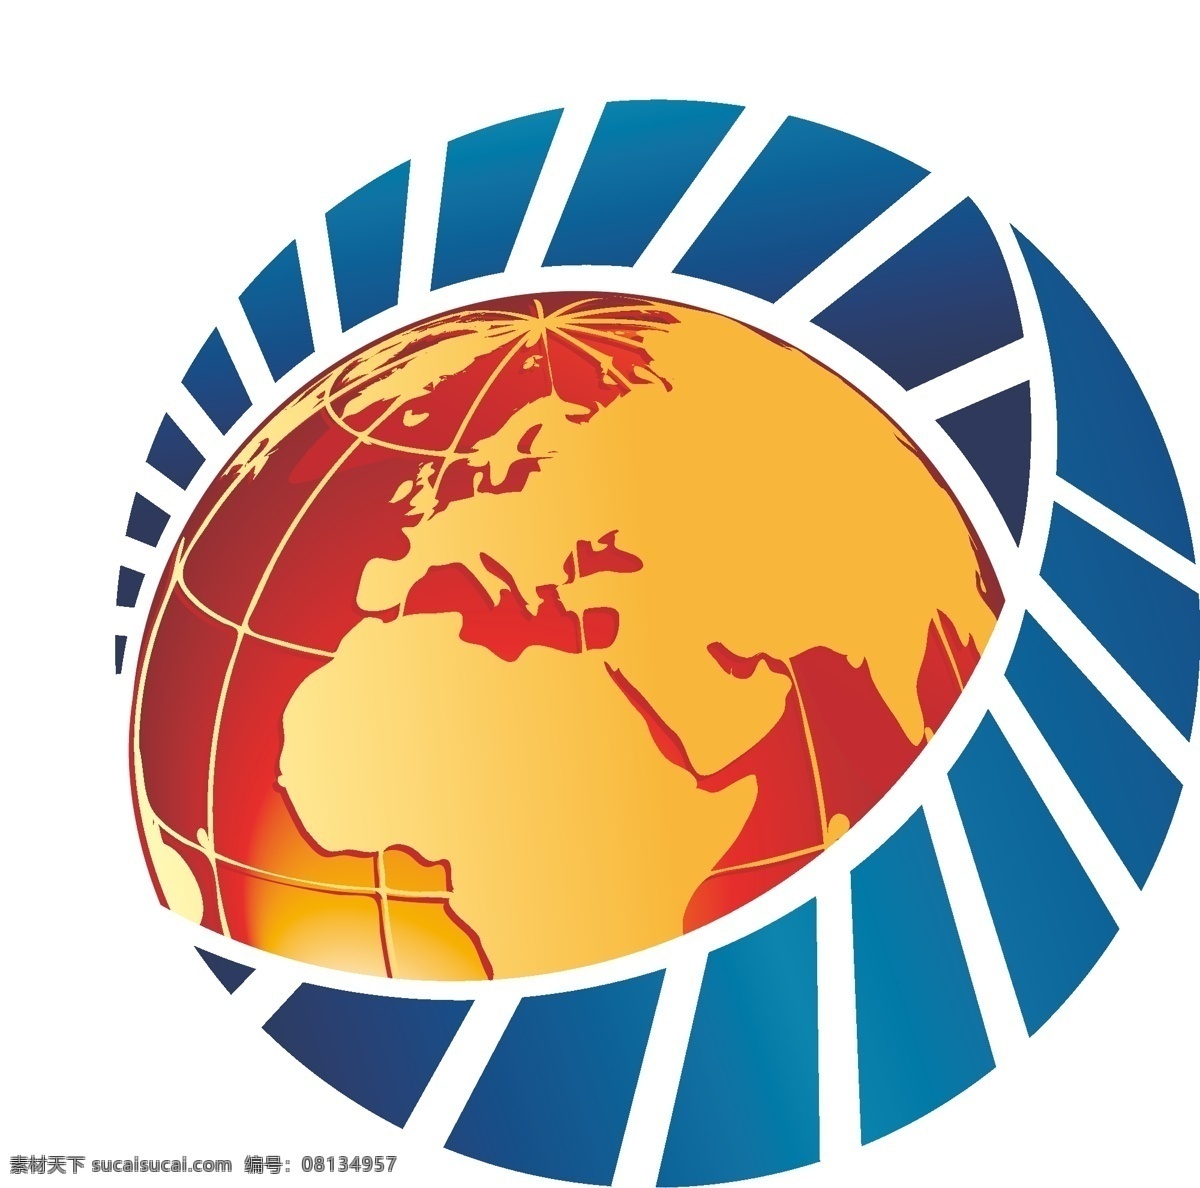 地球logo 地球 中国 非洲 矢量 鱼形 企业 logo 标志 标识标志图标